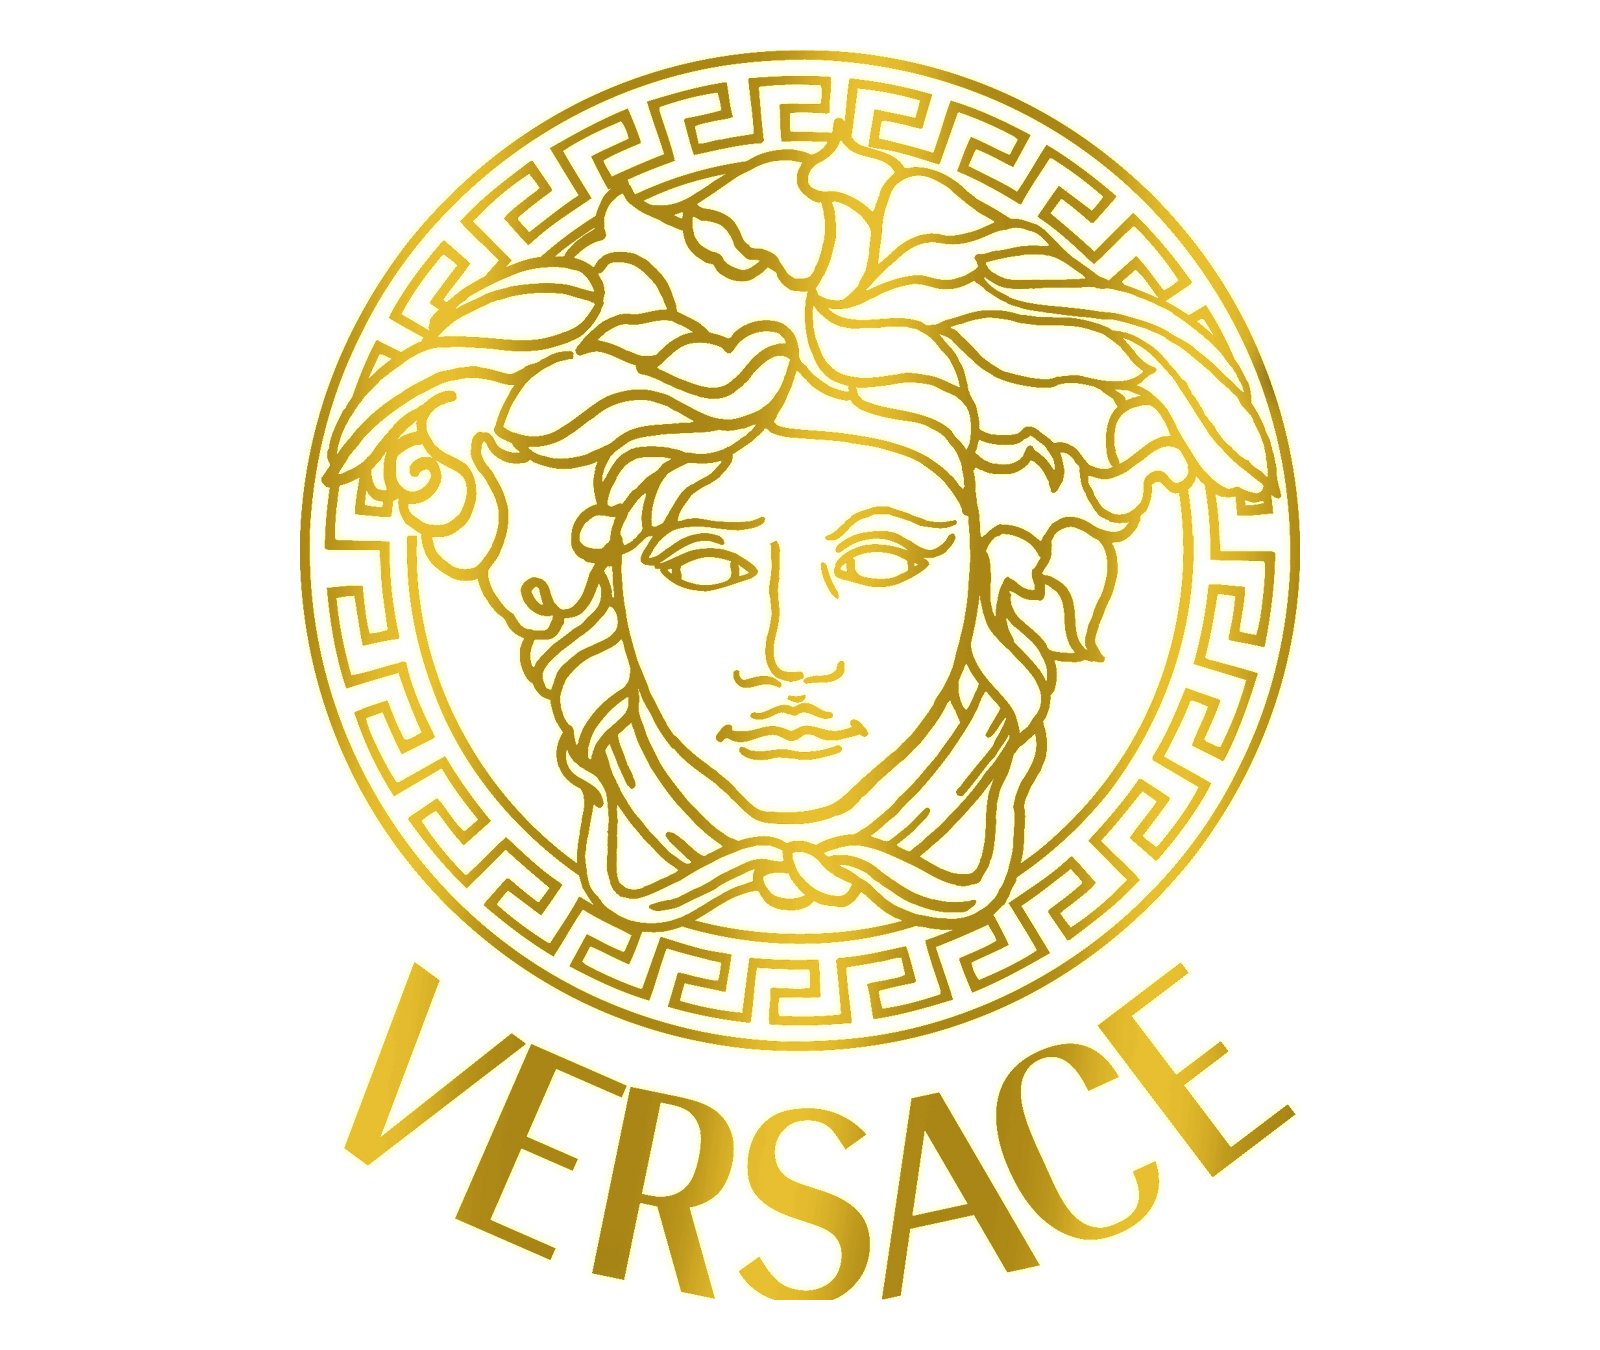 Versace logo histoire et signification, evolution, symbole Versace